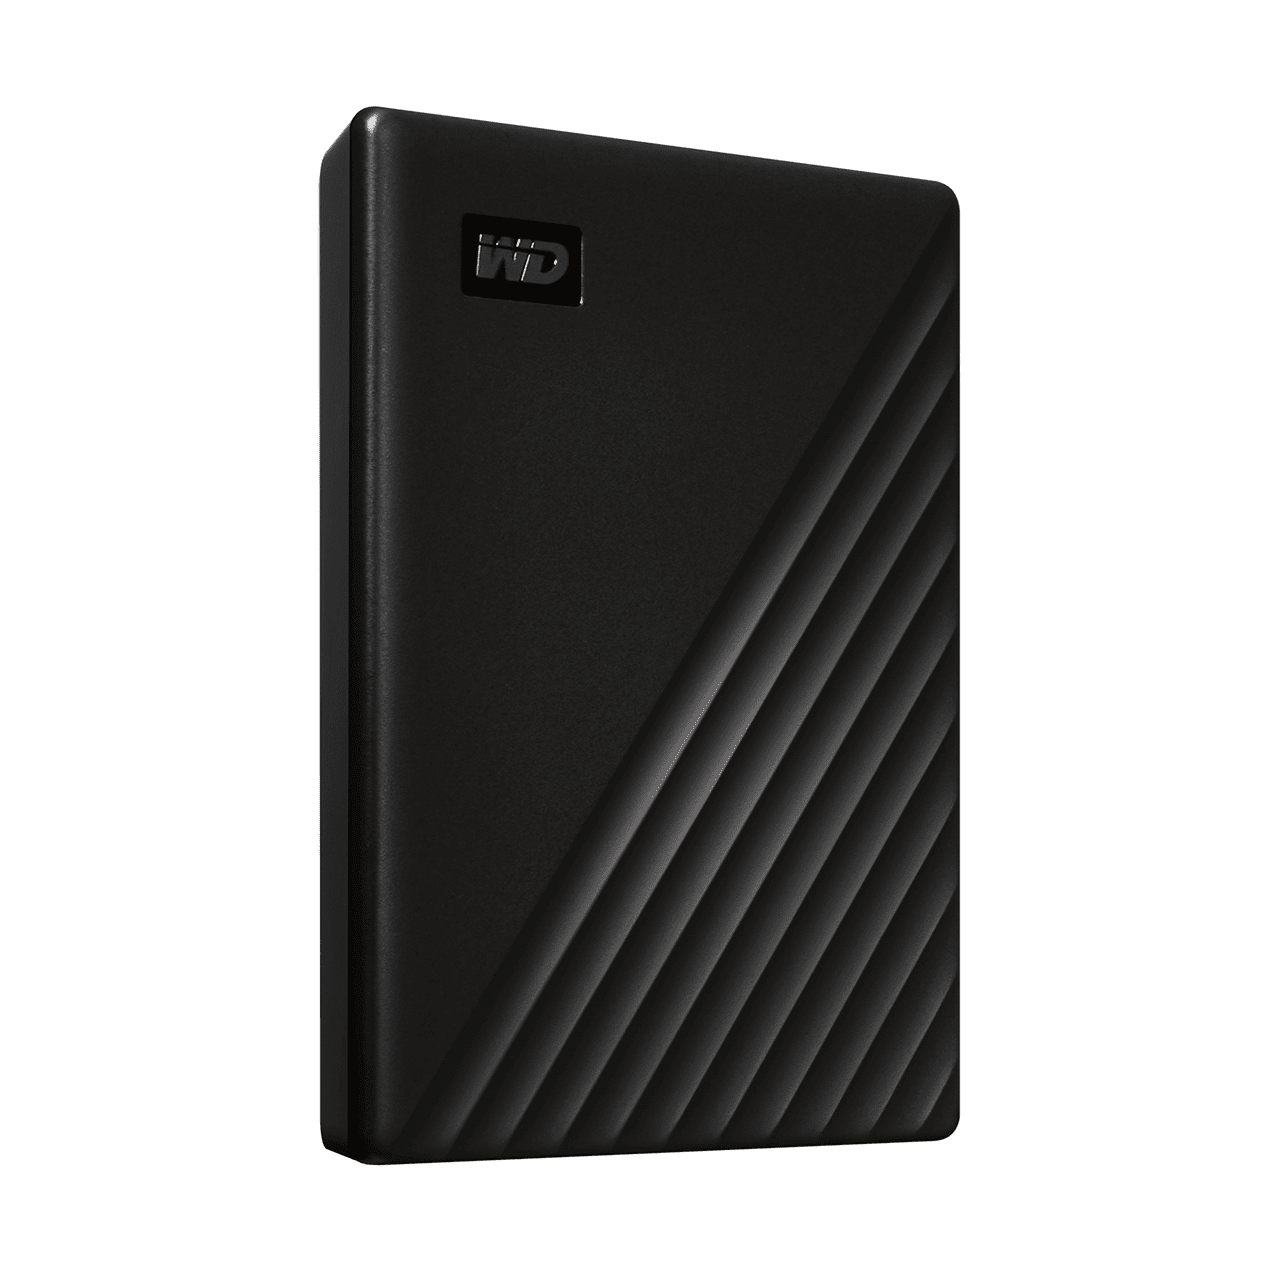 WD MyPassport 5Tb Portable USB 3.2 Hard Drive (Black)